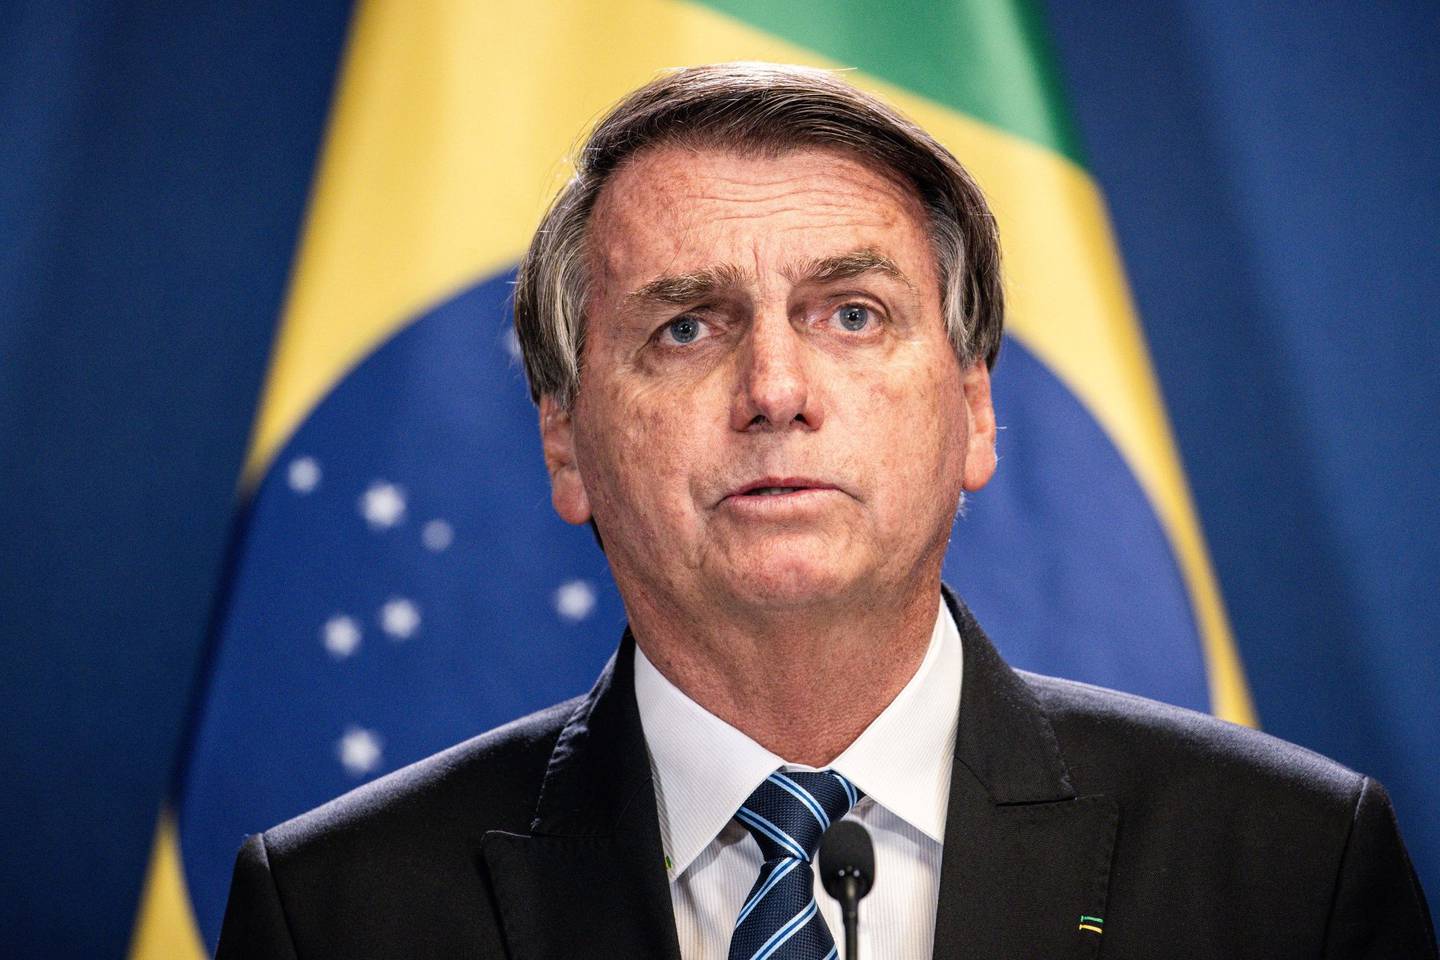 O Ministério das Relações Exteriores disse que o país estará representado na cúpula, mas que a participação de Bolsonaro ainda não foi decidida